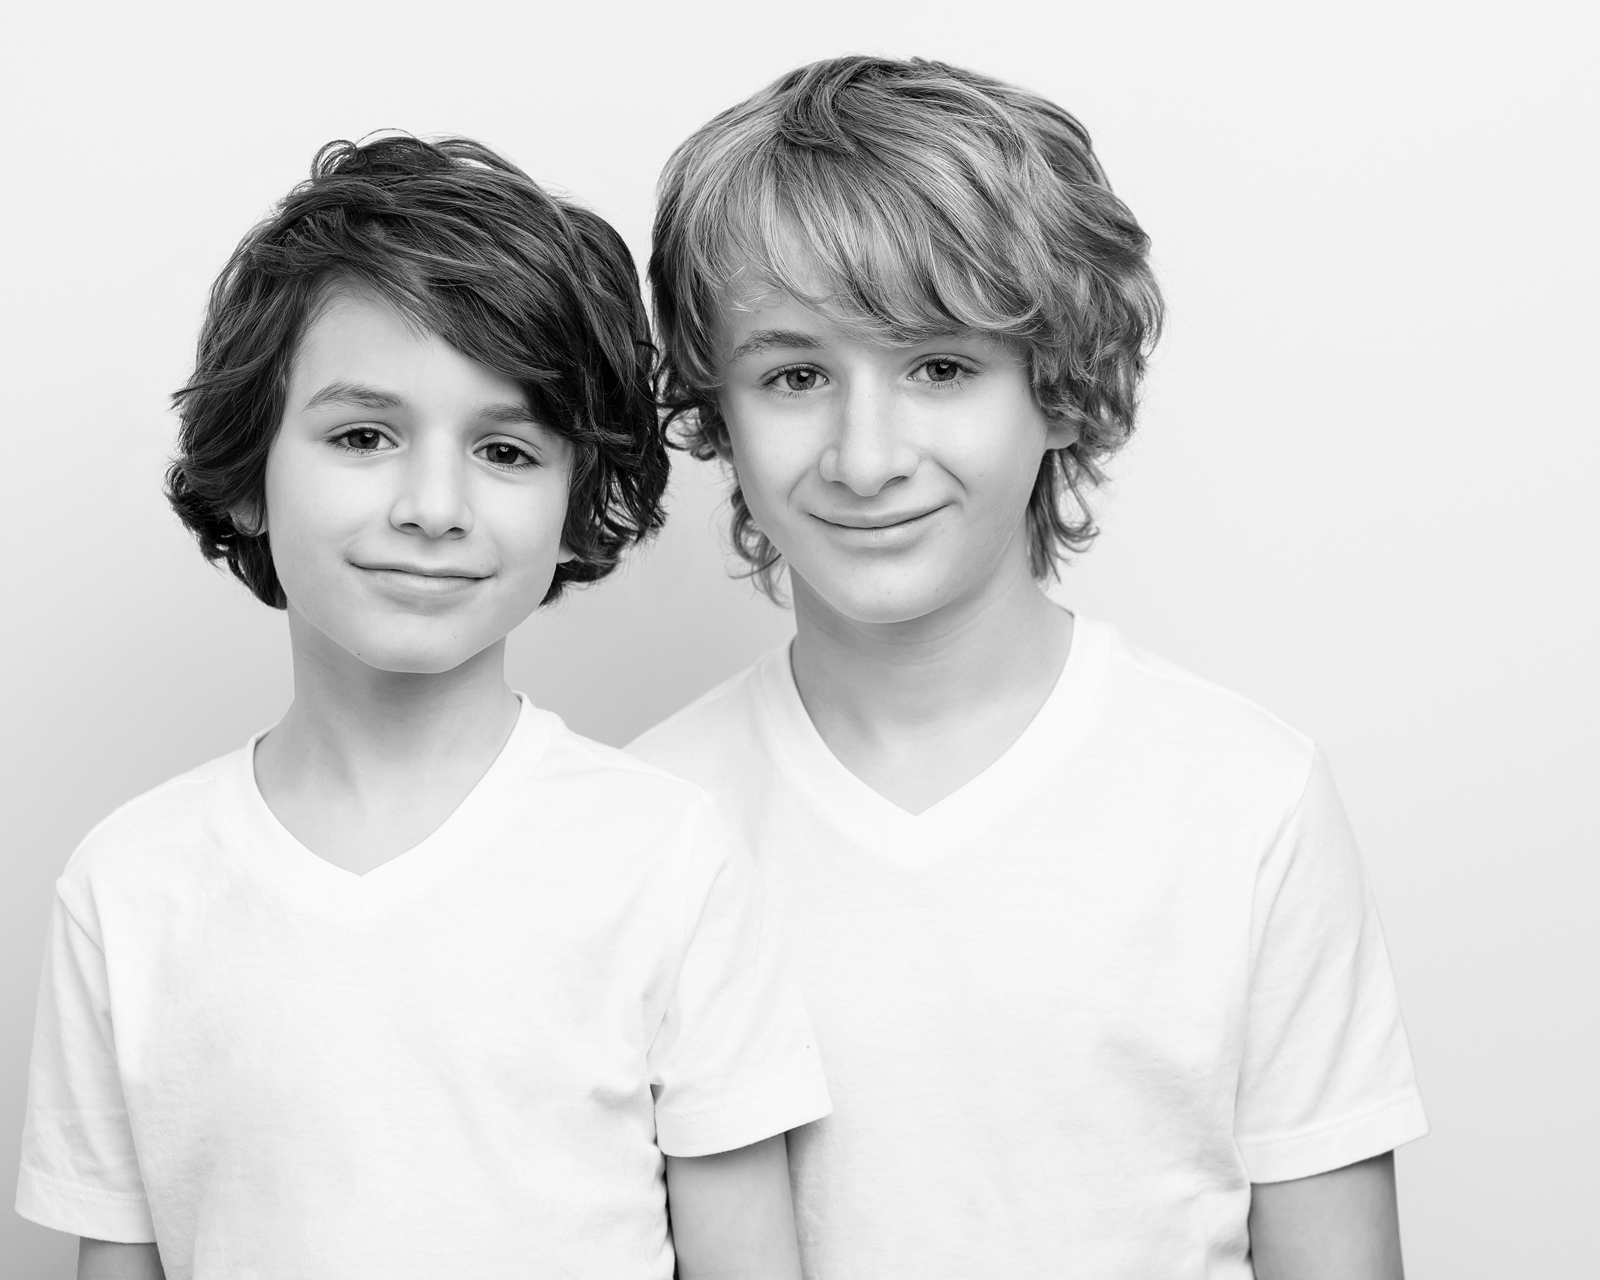 Azriel and Aias Dalman boys family photos black and white.